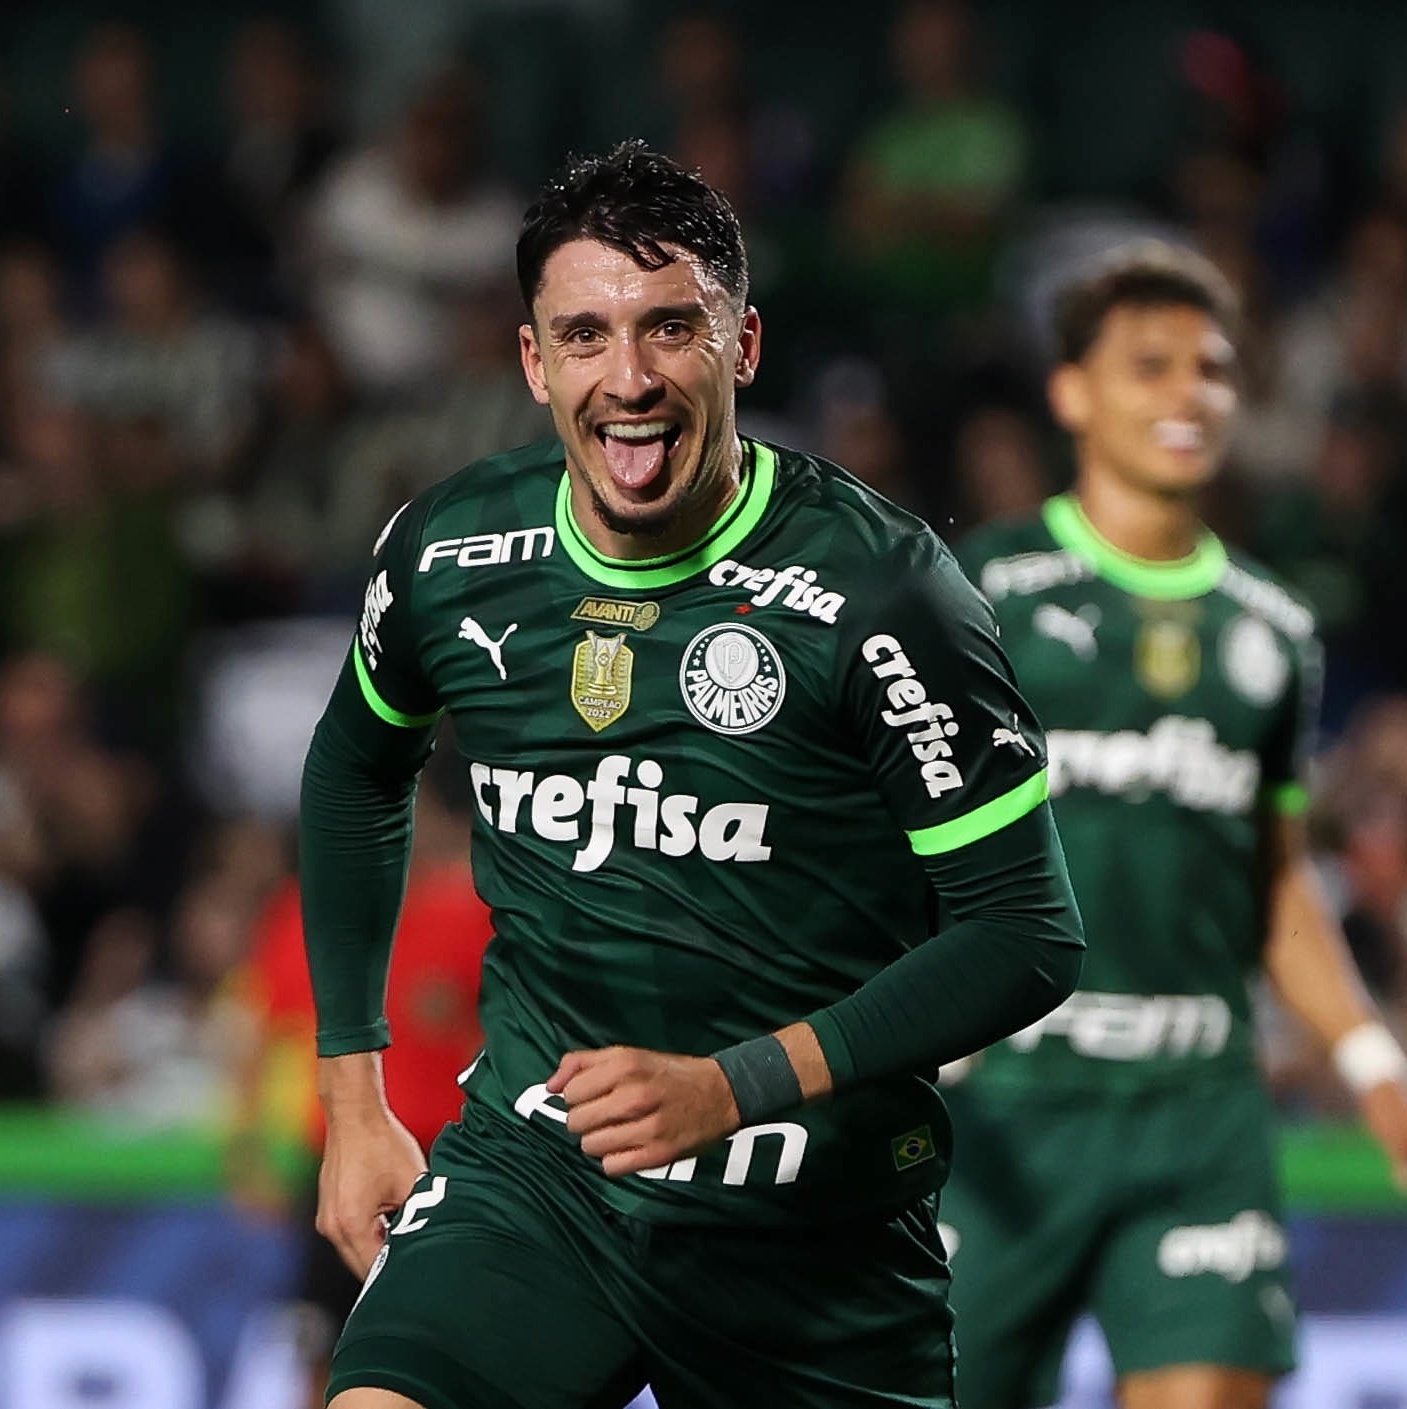 RECORDE HISTÓRICO! Piquerez pode alcançar grande marca com Palmeiras em partida contra Novorizontino